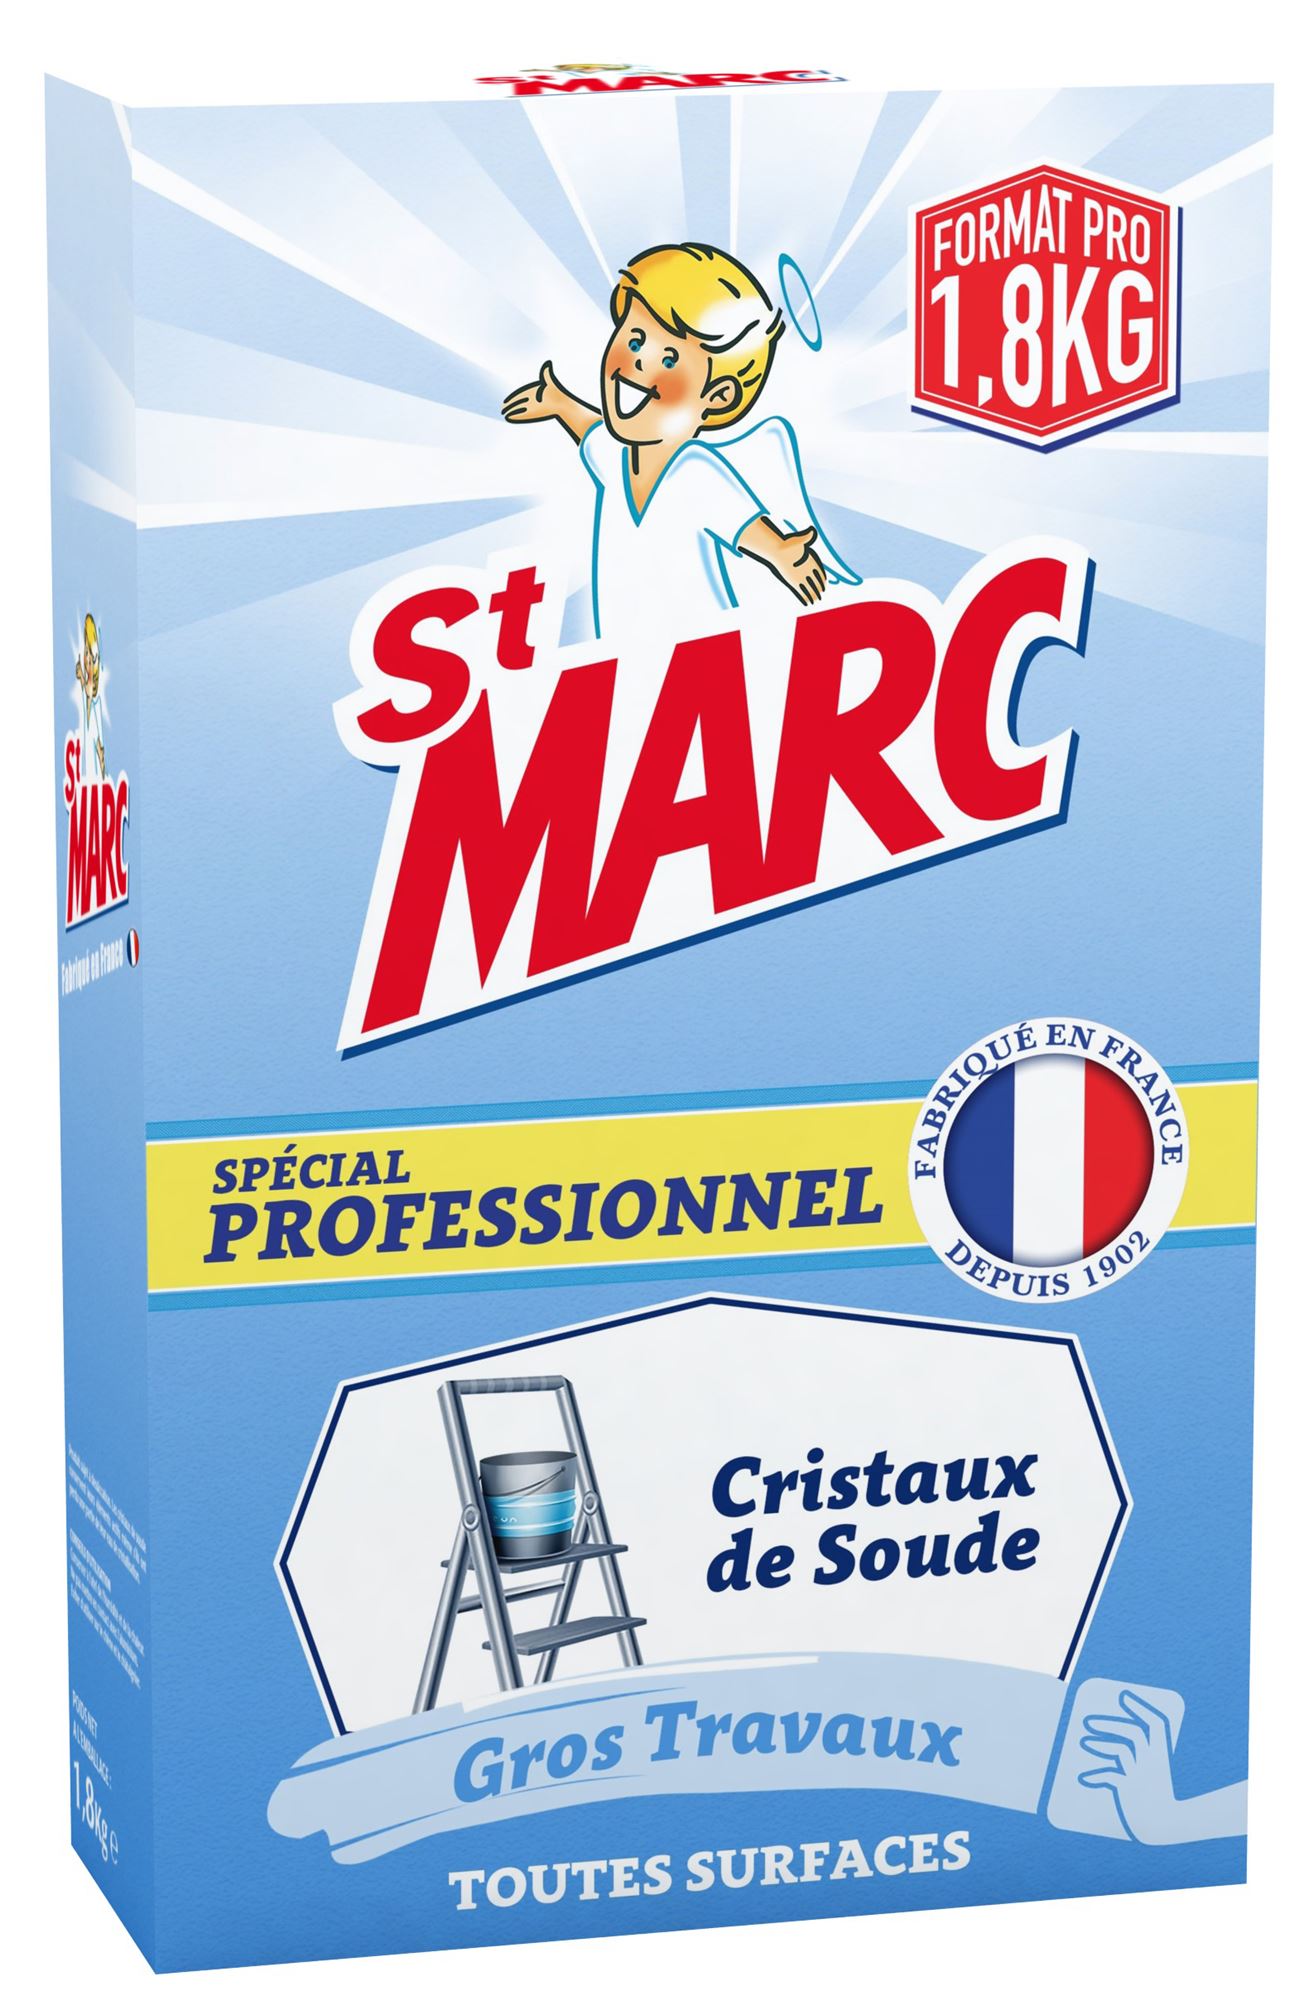 Lessive Professionnel Poudre 1.8Kg St Marc | Sanifer